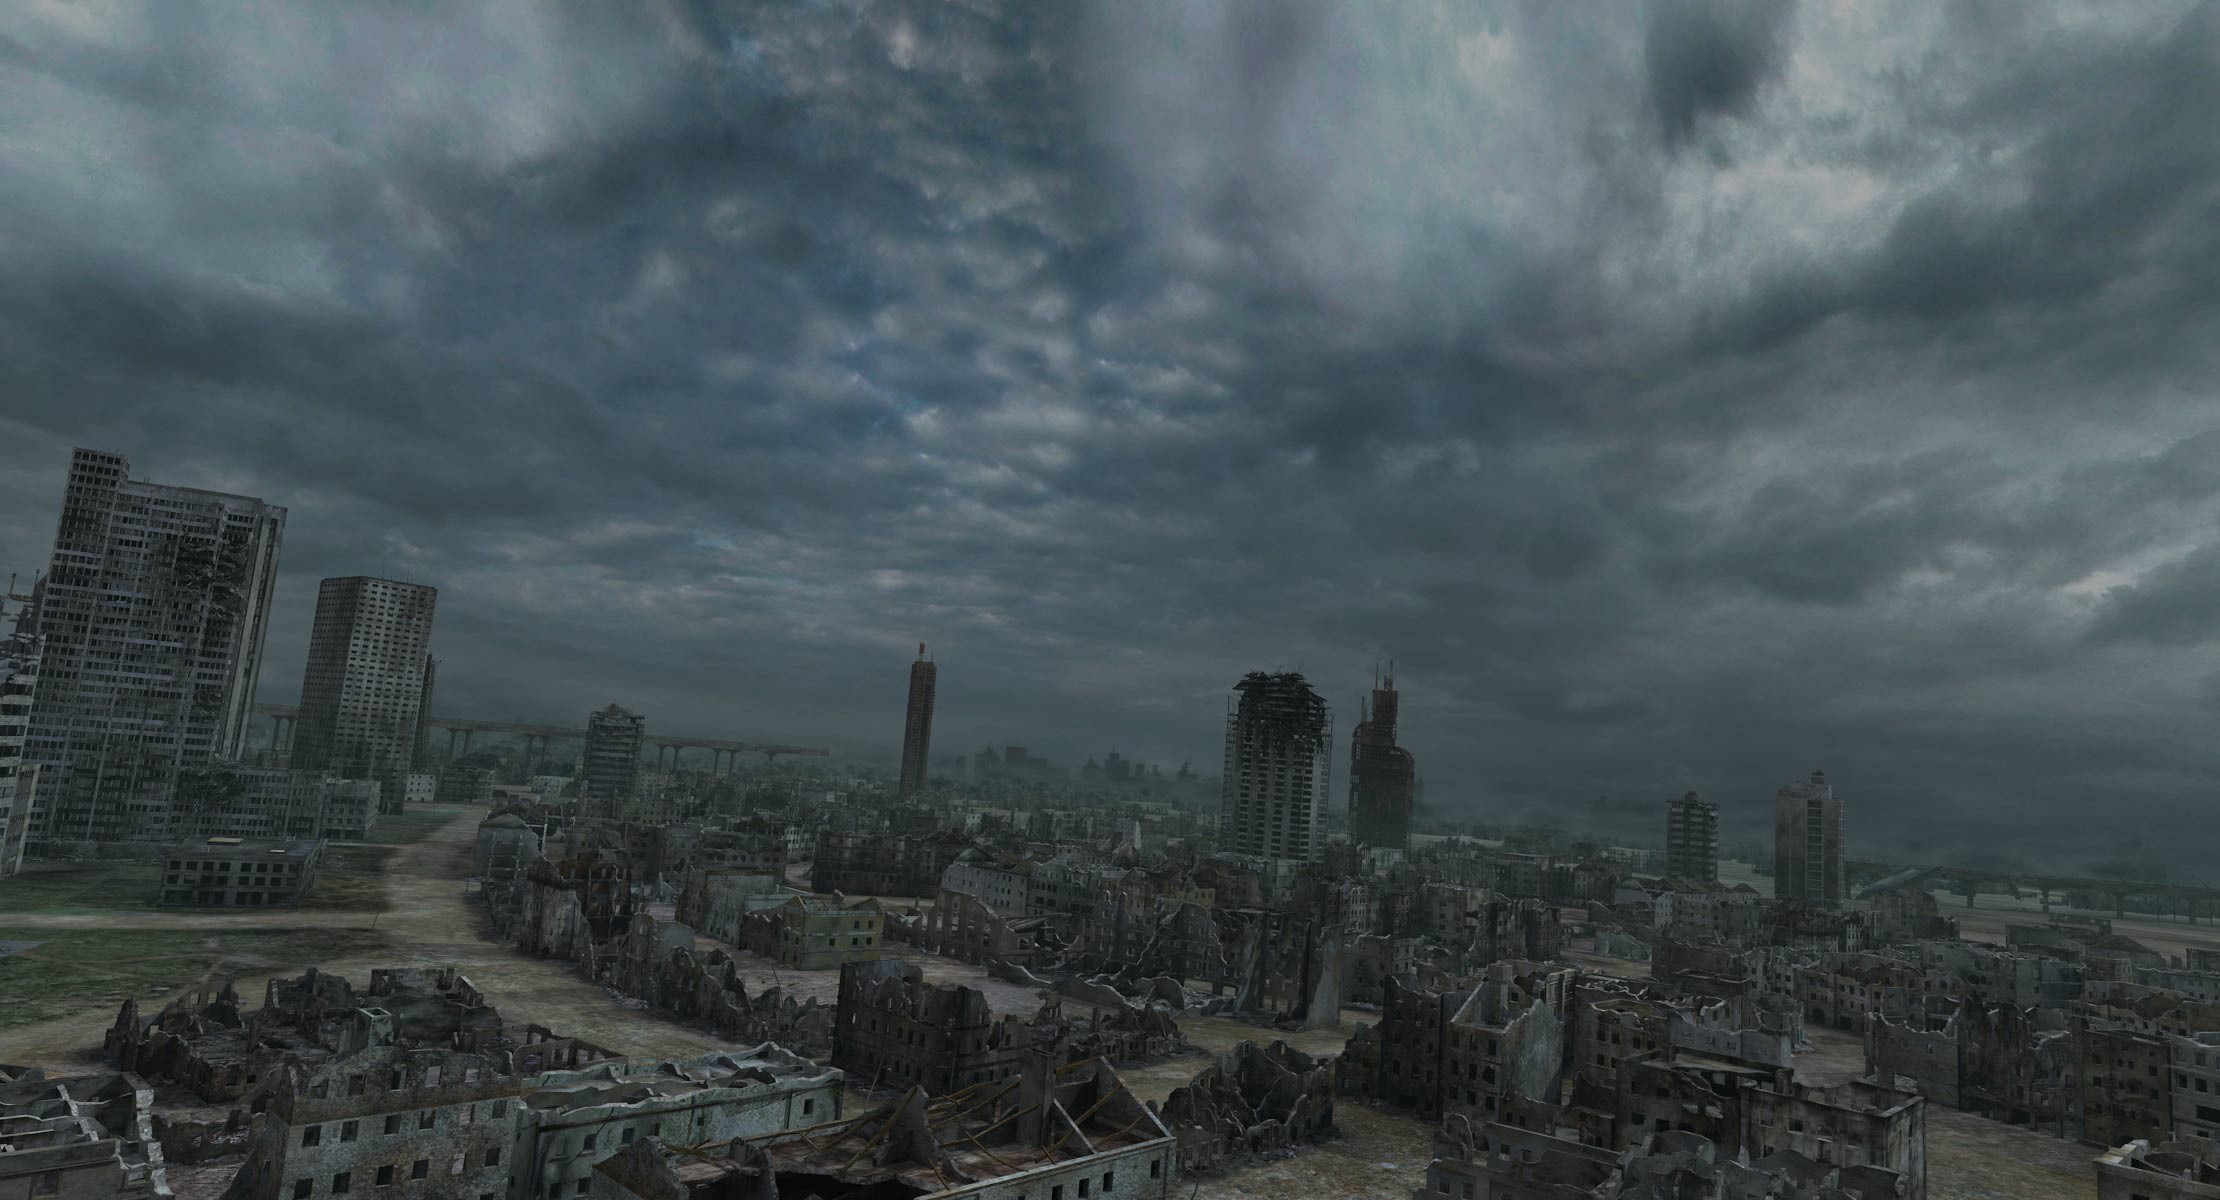 Destroyed town. Разрушенный город. Город после апокалипсиса. Разрушенный город вид сверху. Мрачный постапокалипсис.